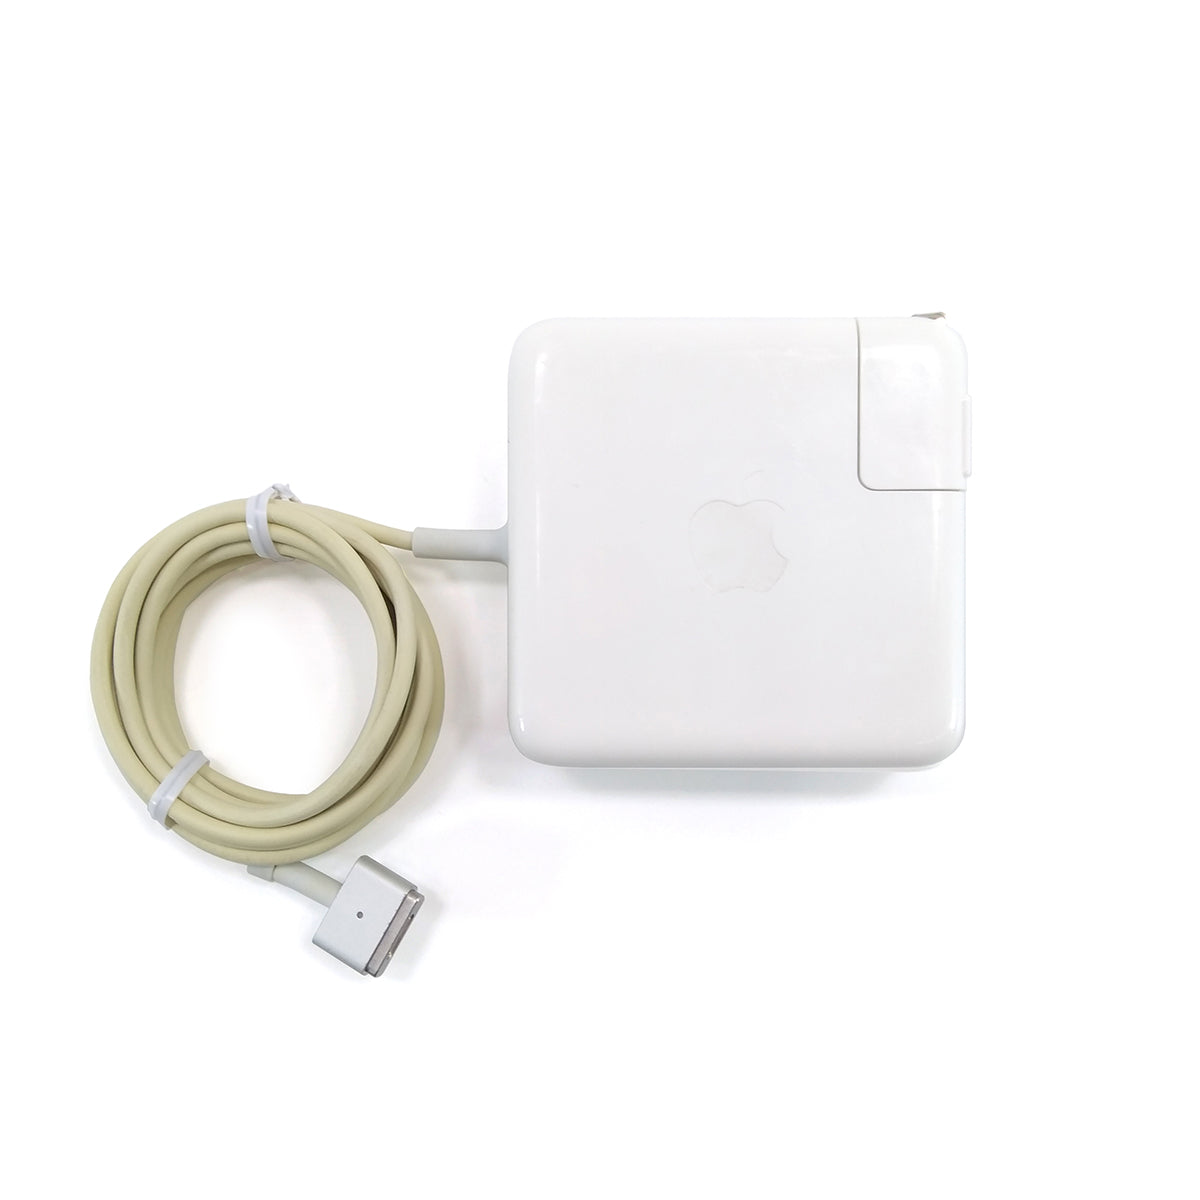 中古品】Apple 60W MagSafe 2電源アダプタ [A_MD565J/A] – 秋葉館